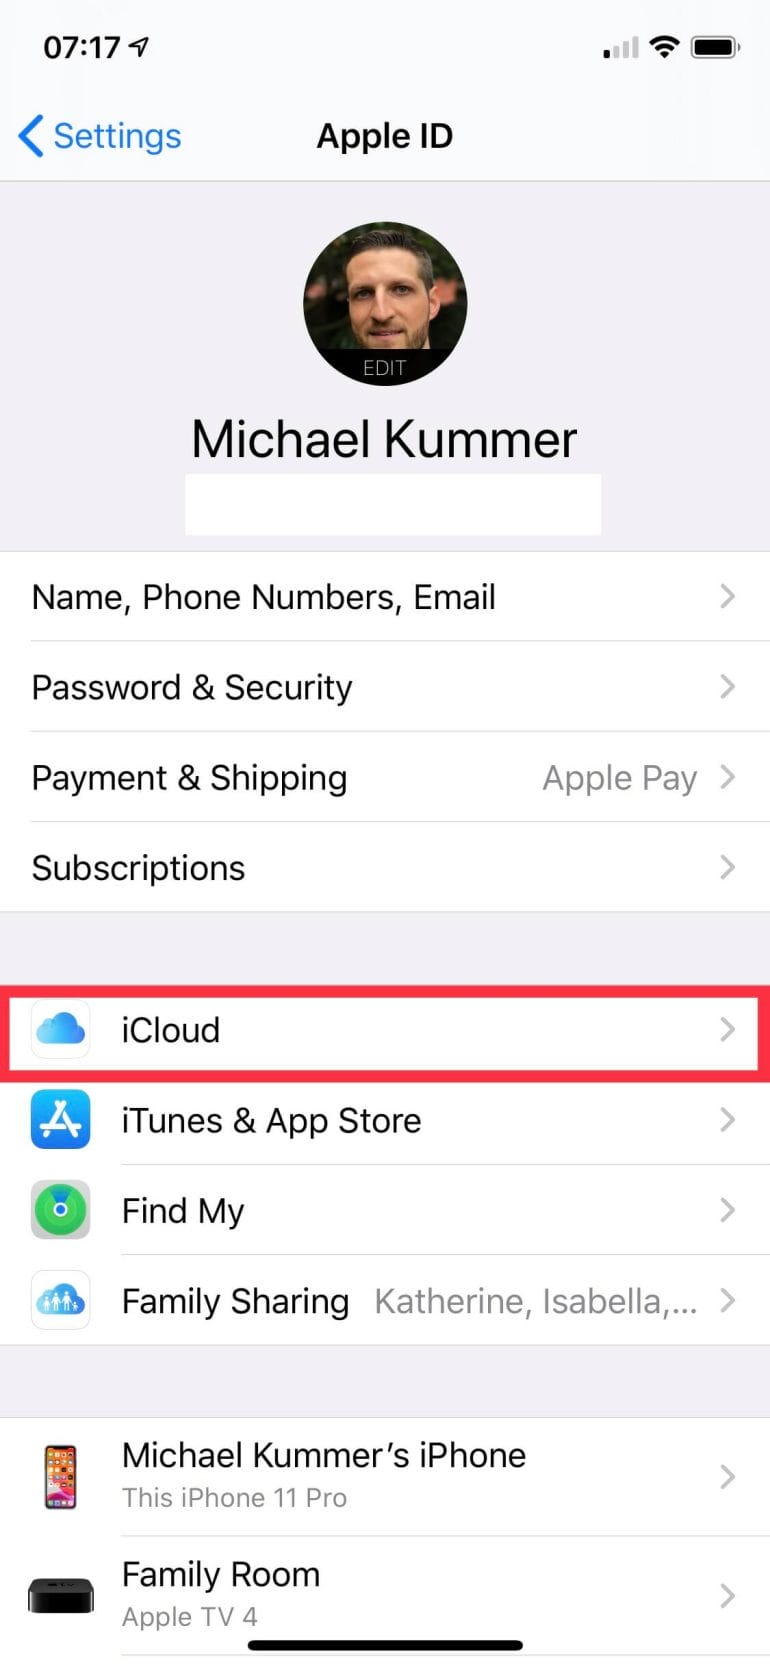 iOS 13 Settings > Apple ID